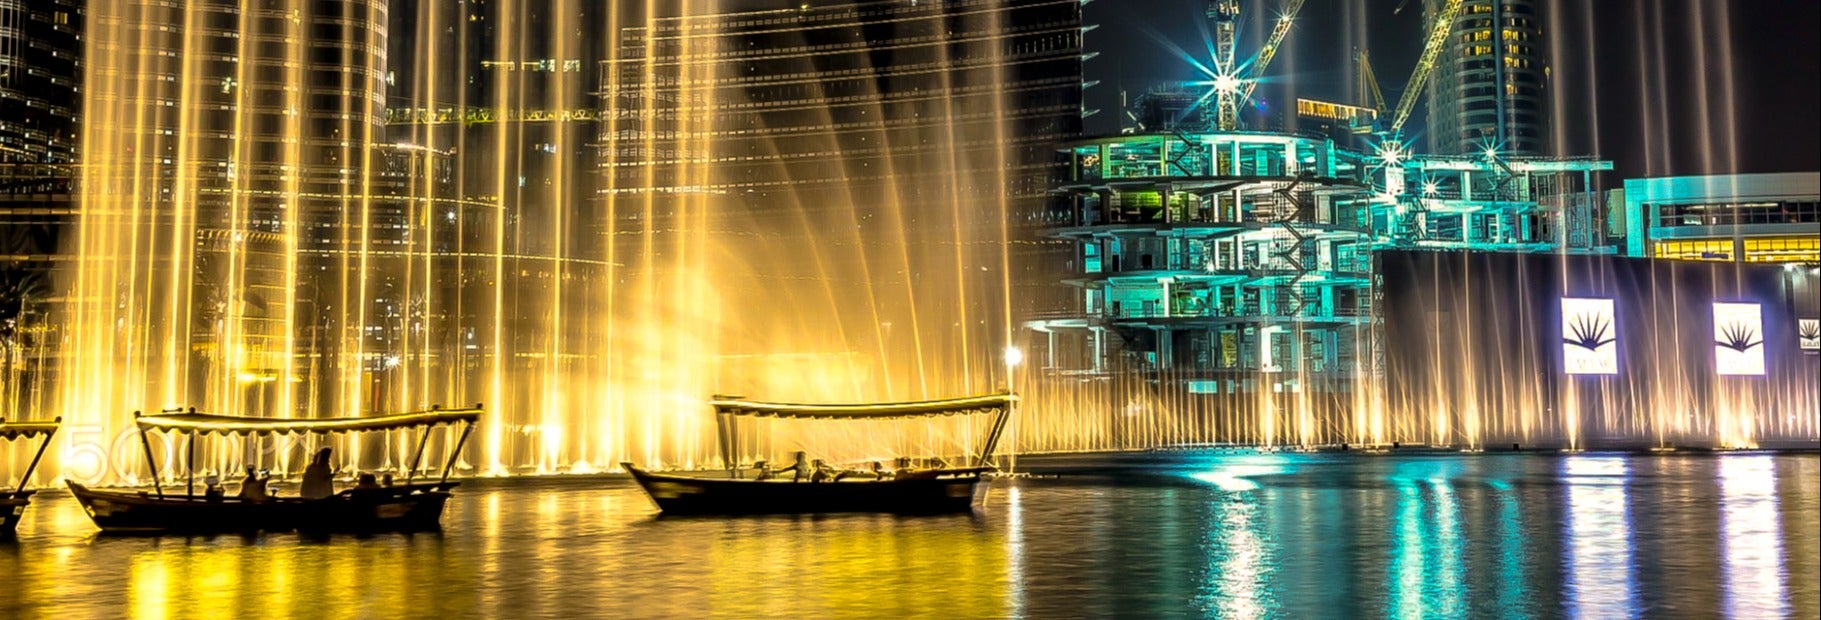 Dubai Fountain Boat Ride